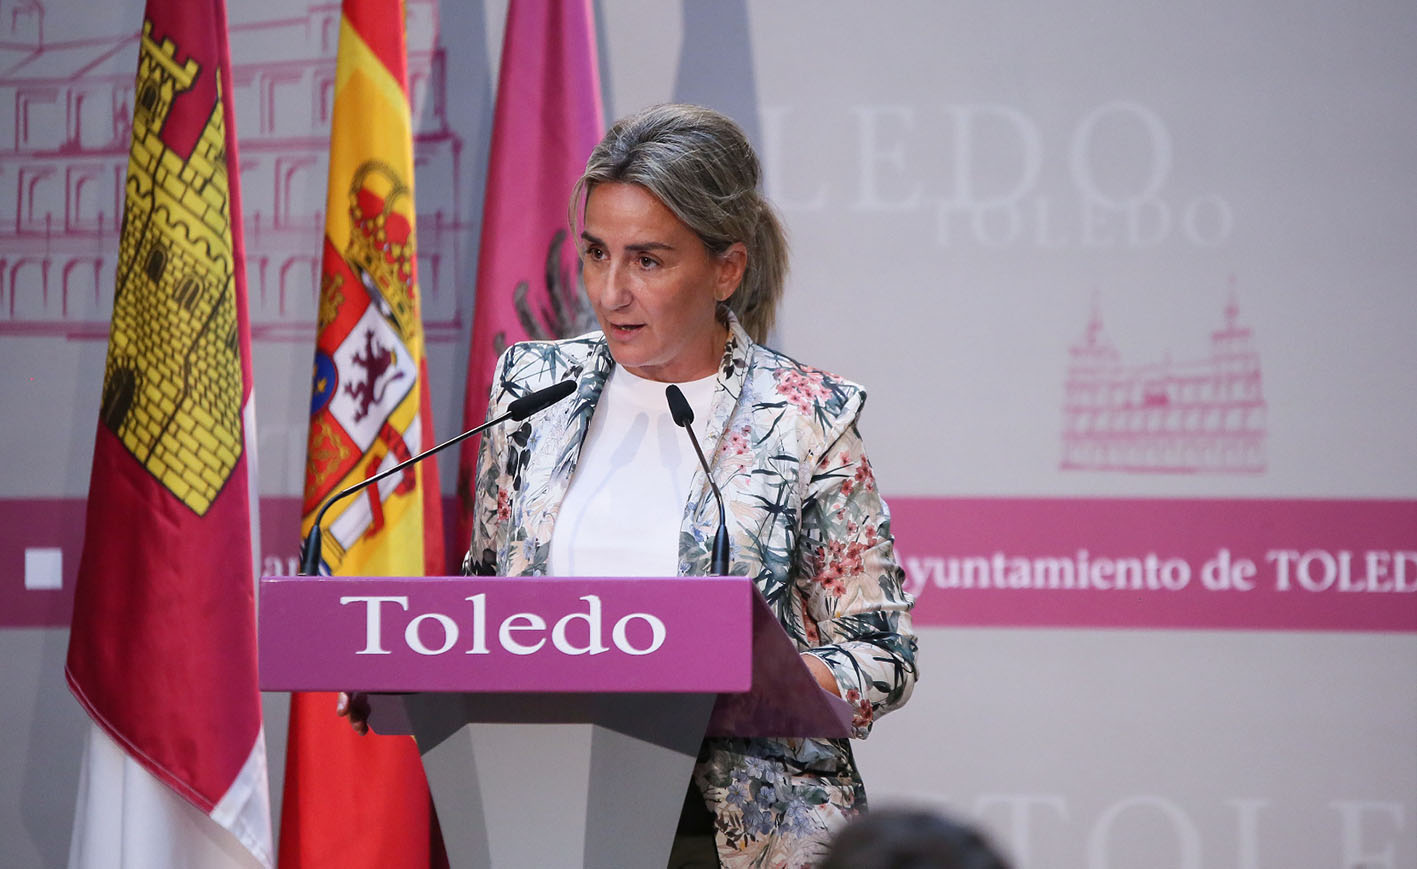 Milagros Tolón, alcaldesa de Toledo, ha señalado que los alcaldes son de una pasta especial y que ante las desgracias muestran mucha solidaridad sean del partido político que sean.